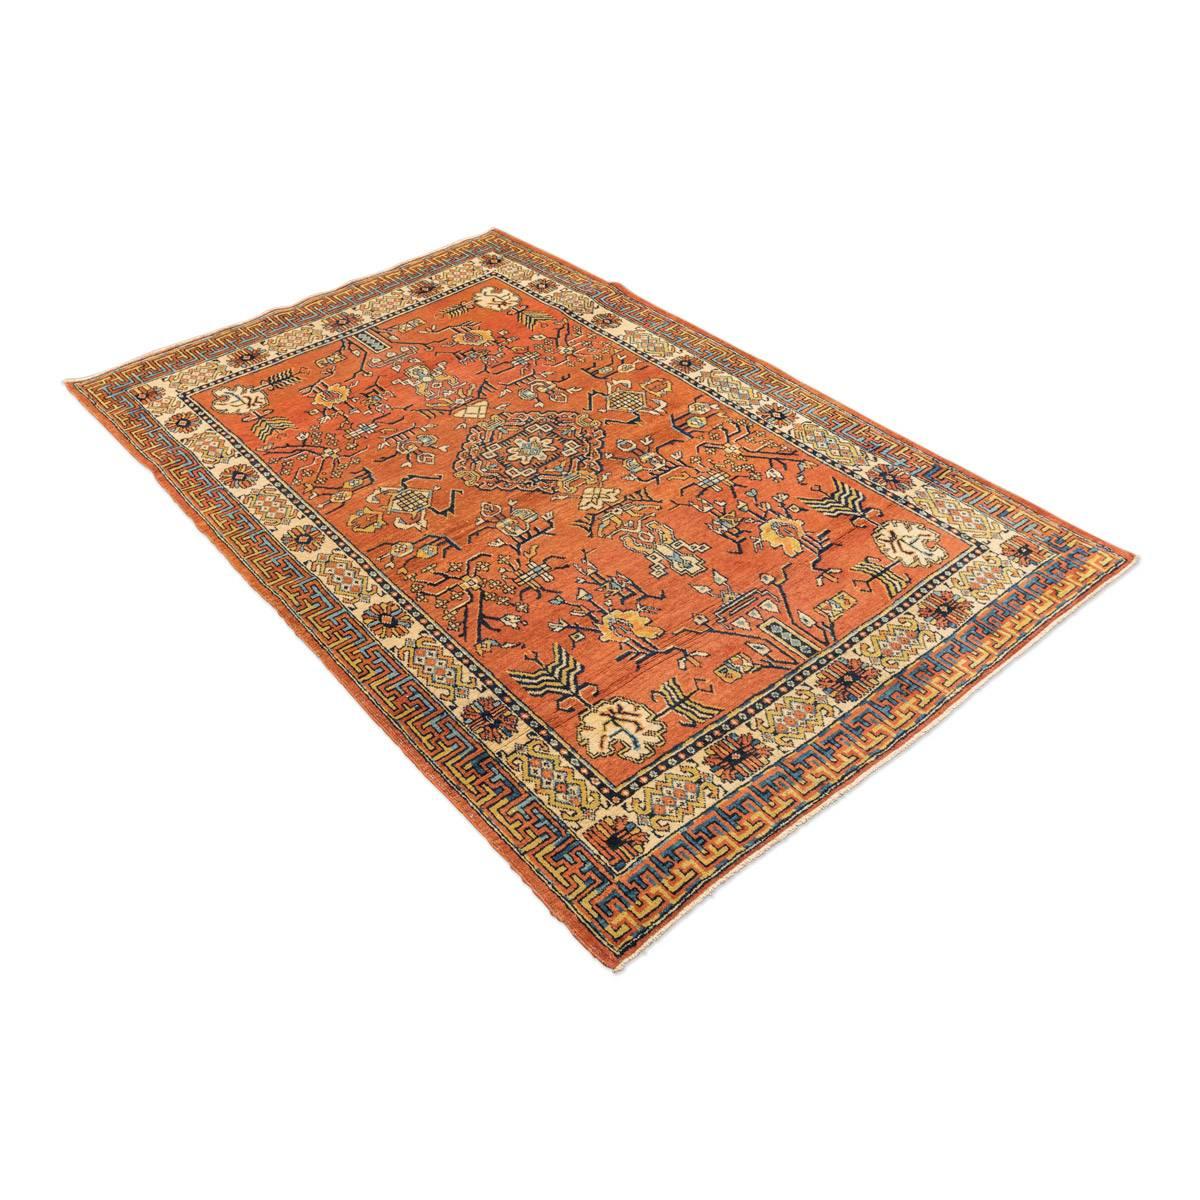 Samarkand-Teppich, Kothan-Muster mit Einflüssen von chinesischen Teppichen und der alten Seidenstraße, um 1900.
- Wir heben die Qualität der Erhaltung der Farben hervor.
- Farben in Karamelltönen.
- Geometrische Blätter und Blumen bilden das